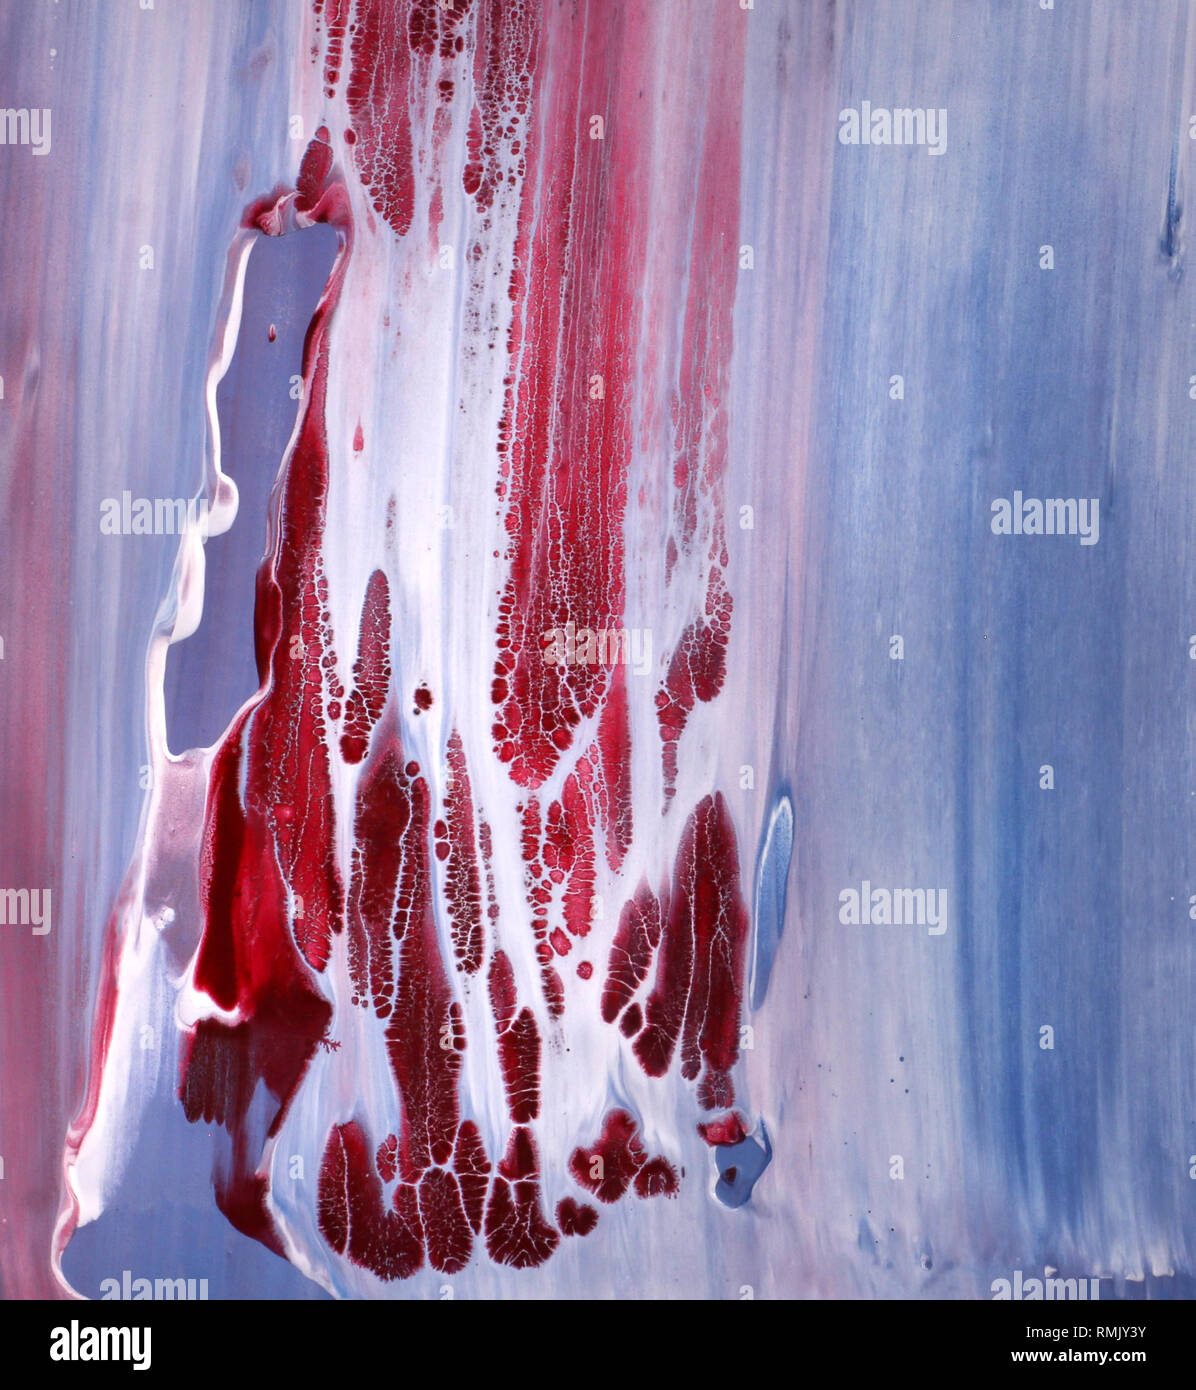 Illustrazione estetica acrilica rossa e blu Foto Stock